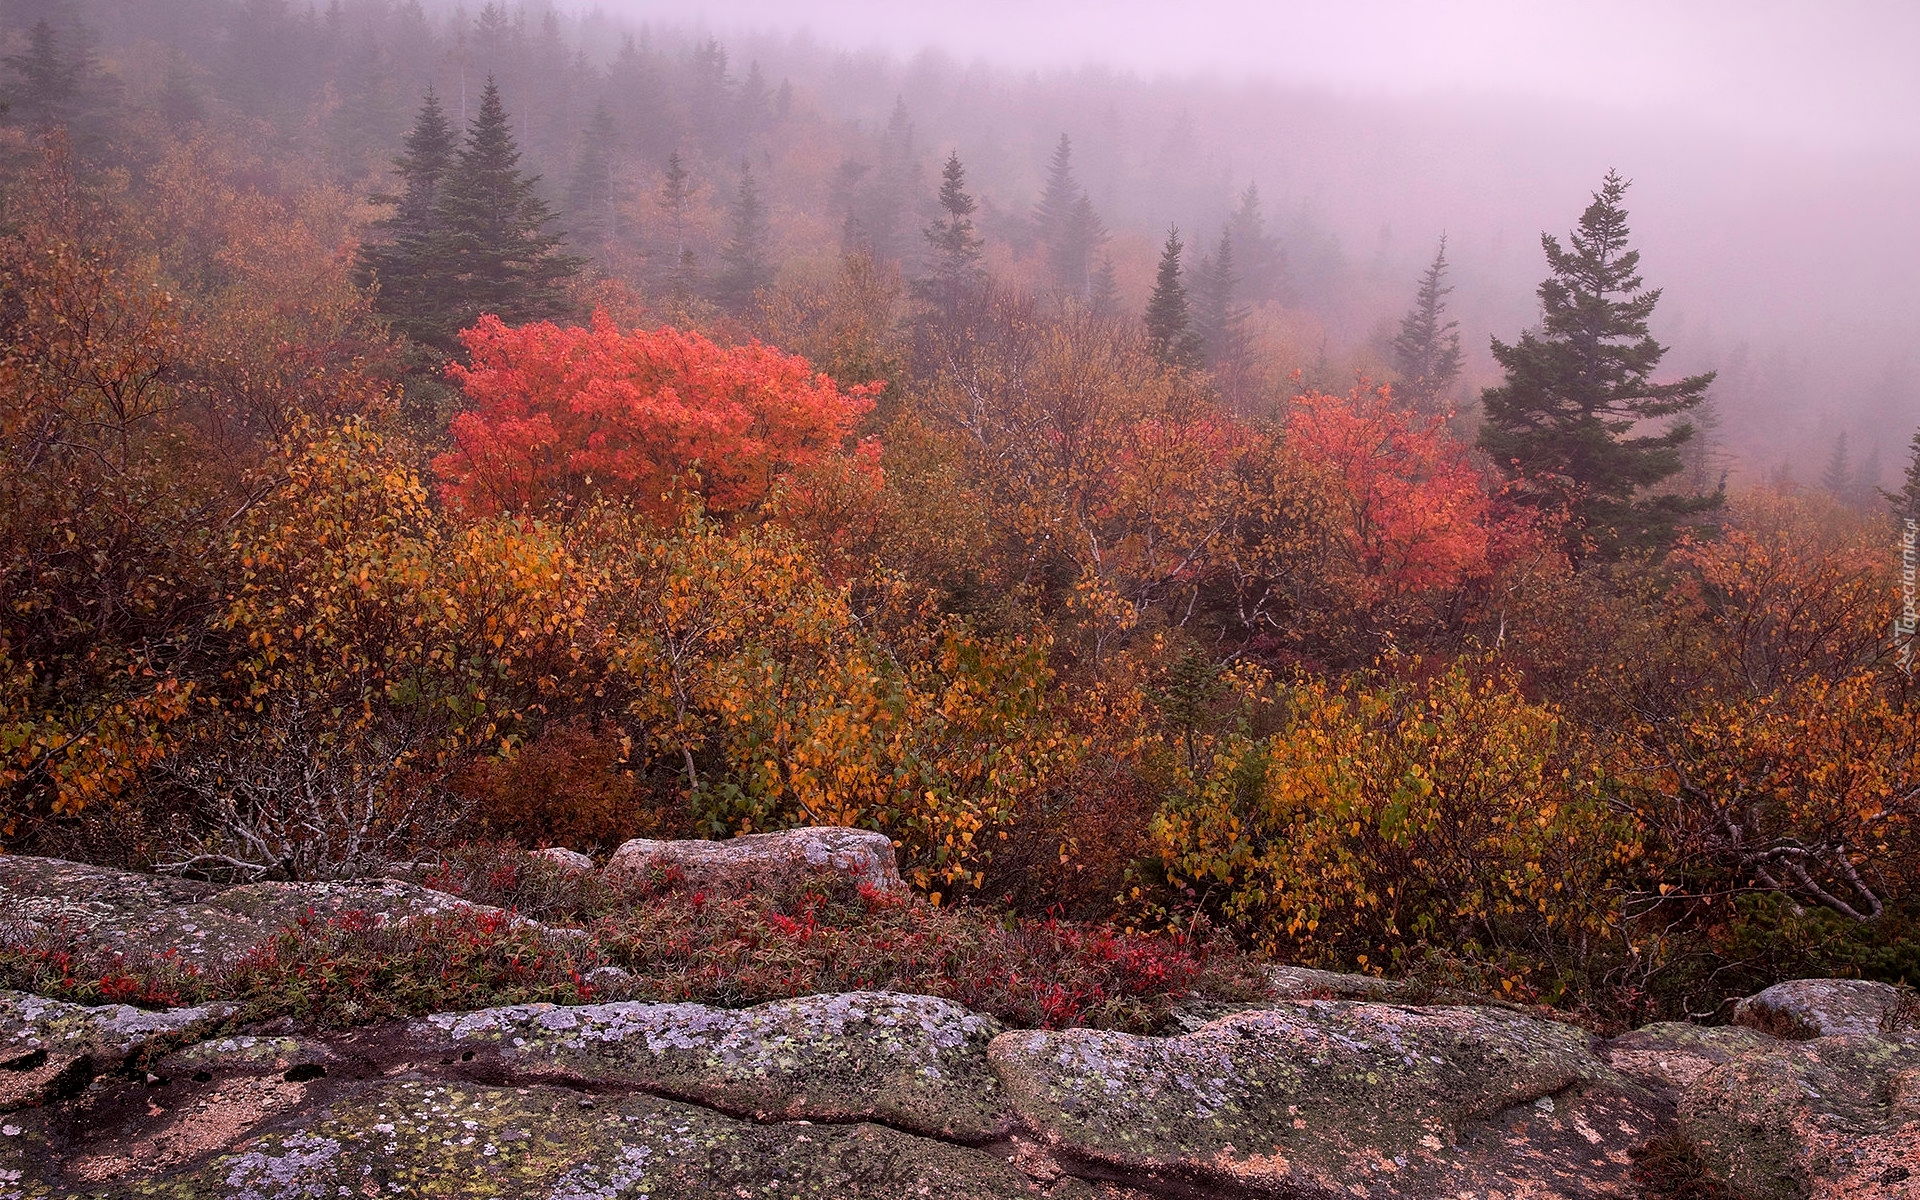 Jesień, Kamienie, Głazy, Drzewa, Kolorowe, Krzewy, Mgła